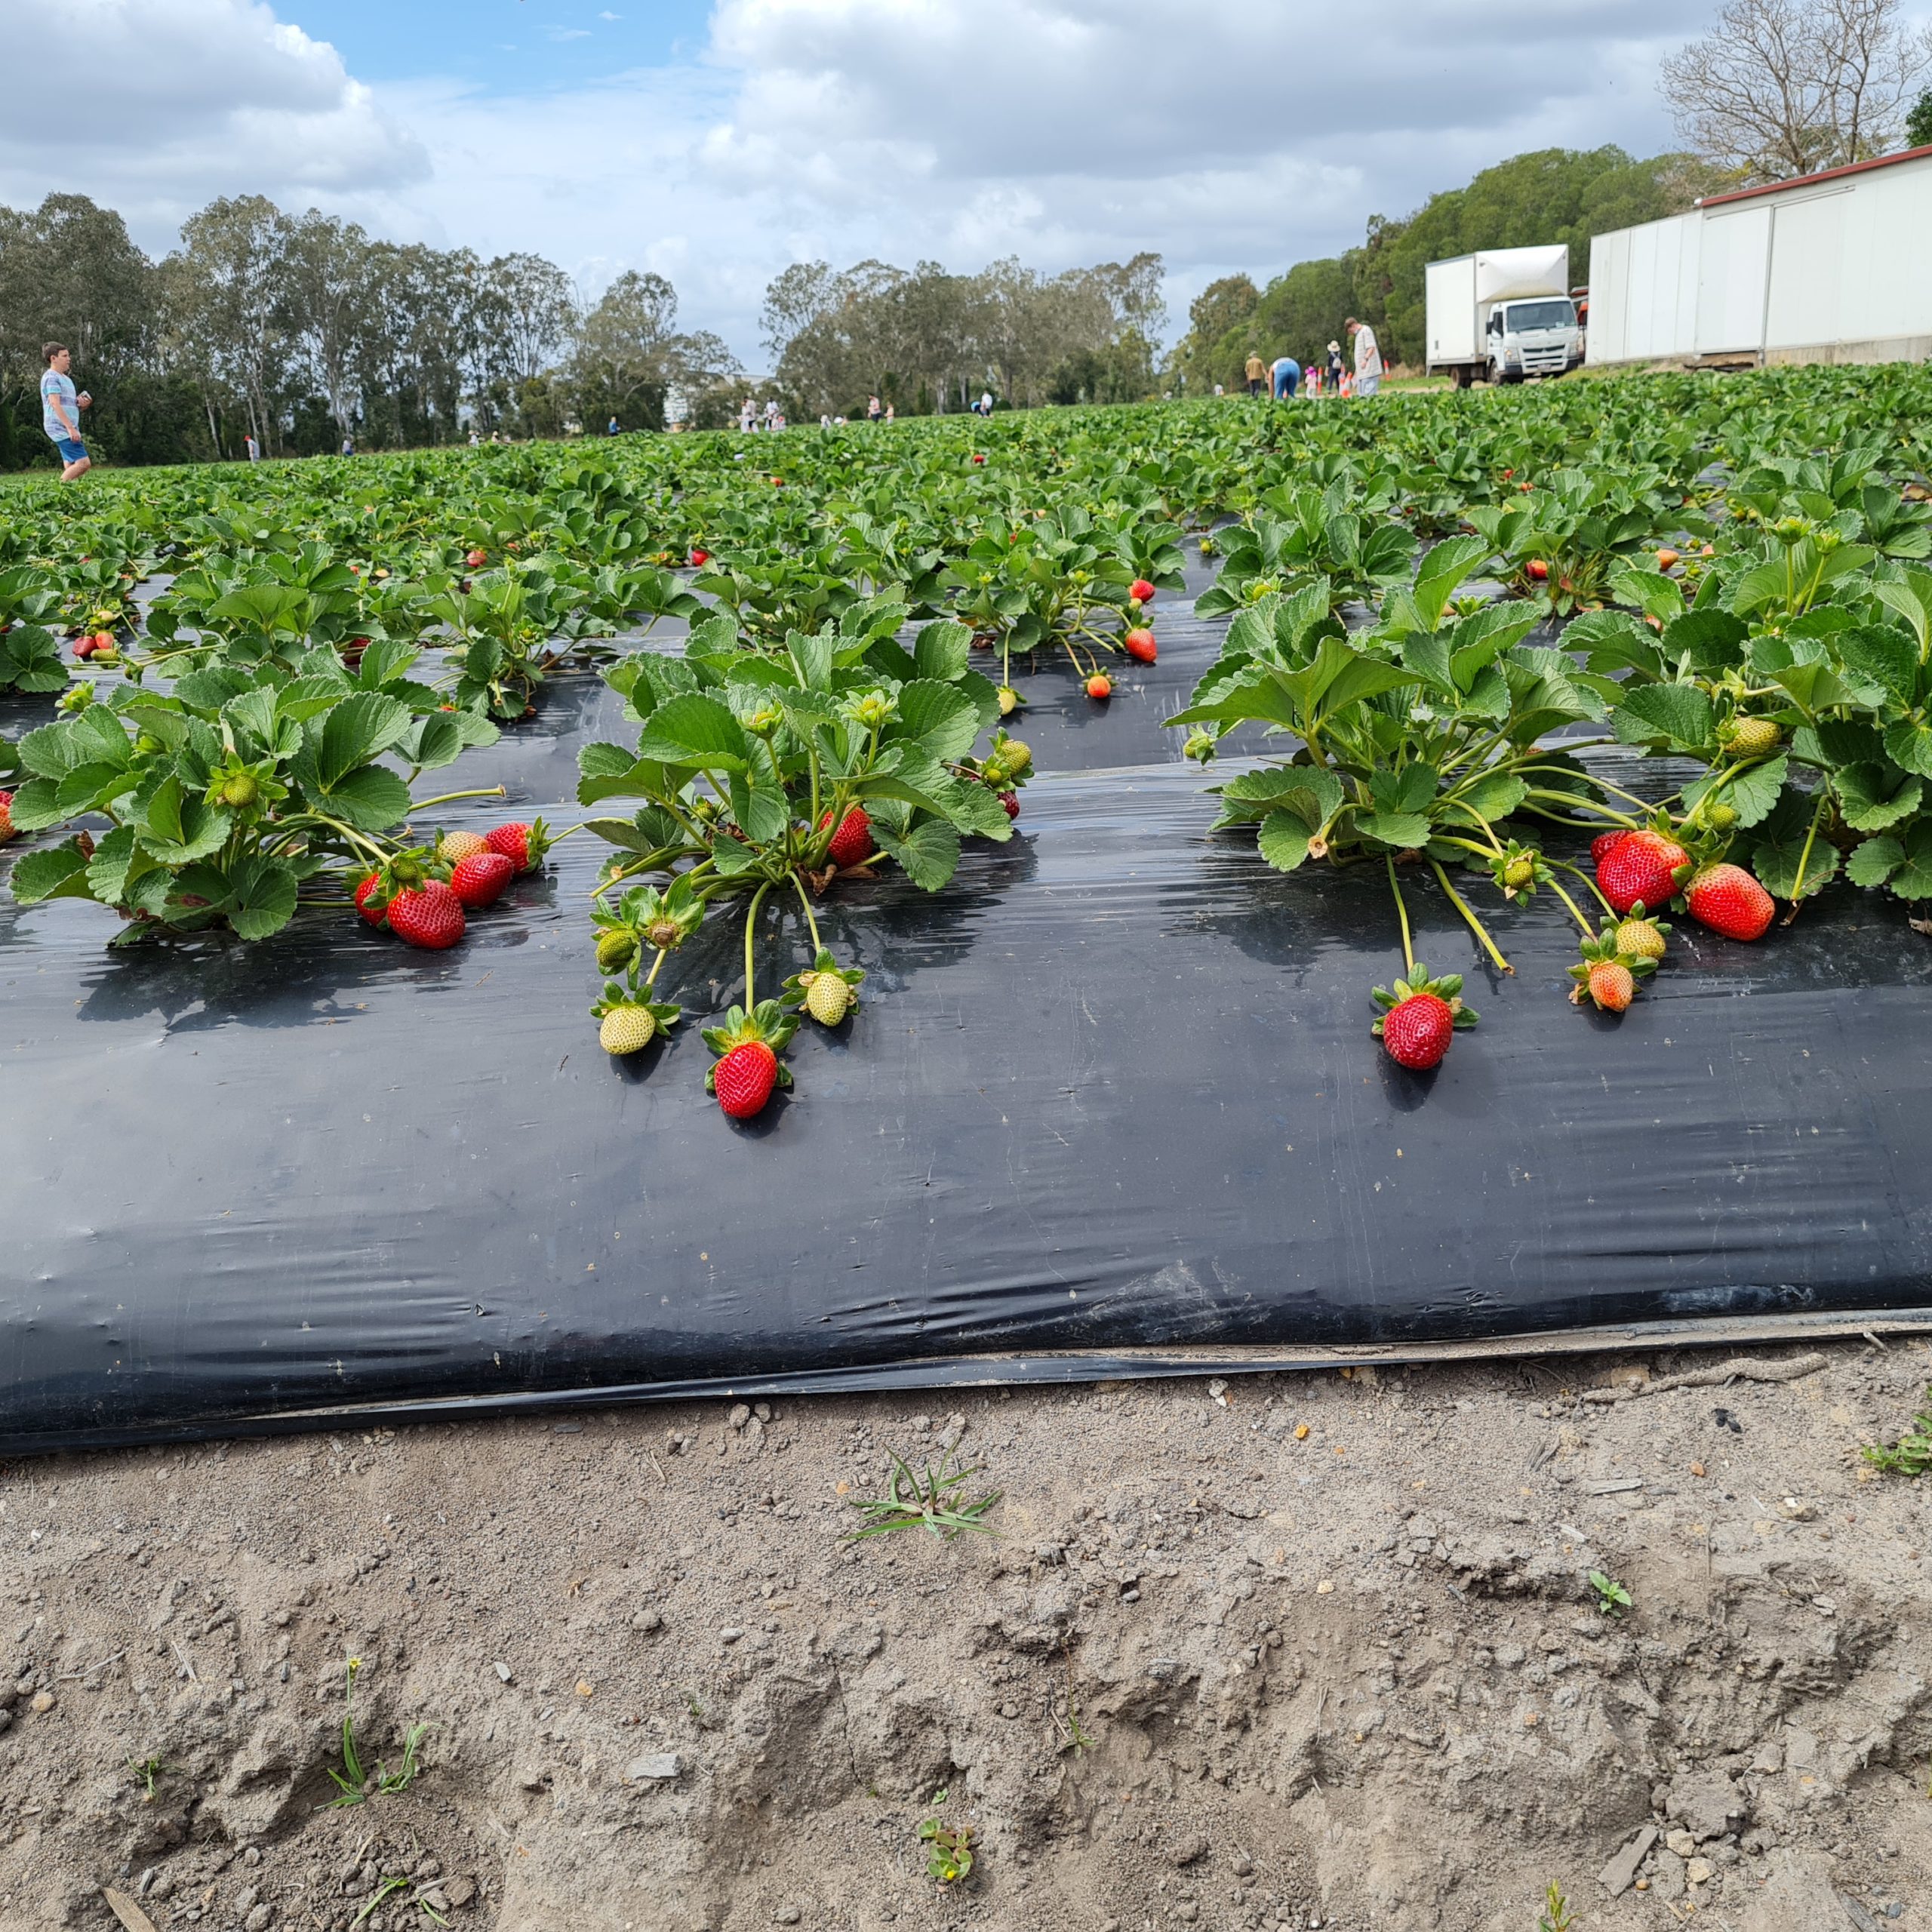 Queensland Strawberries